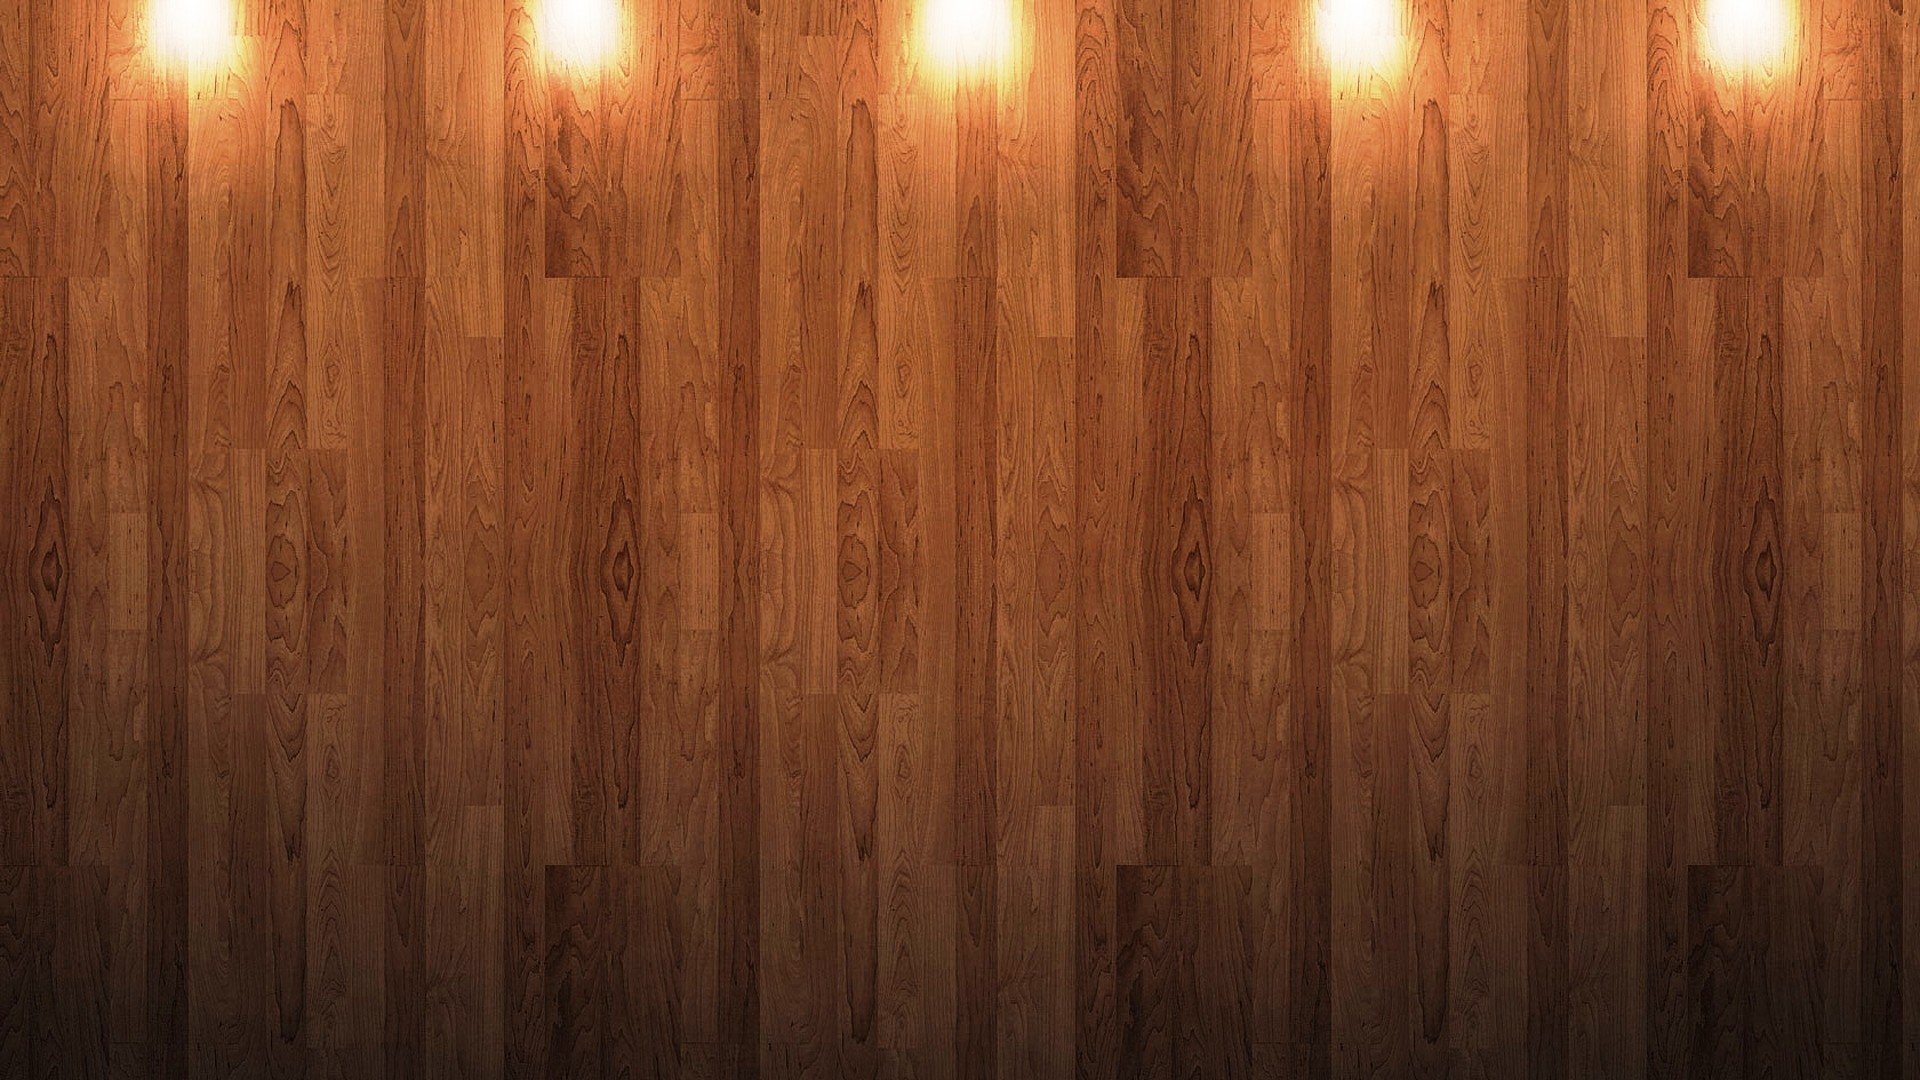 Hình nền gỗ HD - Với chất lượng độ phân giải cao, hình nền gỗ HD có thể cho bạn trải nghiệm trực quan nhất về độ chi tiết và vẻ đẹp tự nhiên của gỗ. Những hình ảnh này chắc chắn sẽ mang đến cho bạn một trải nghiệm thú vị.